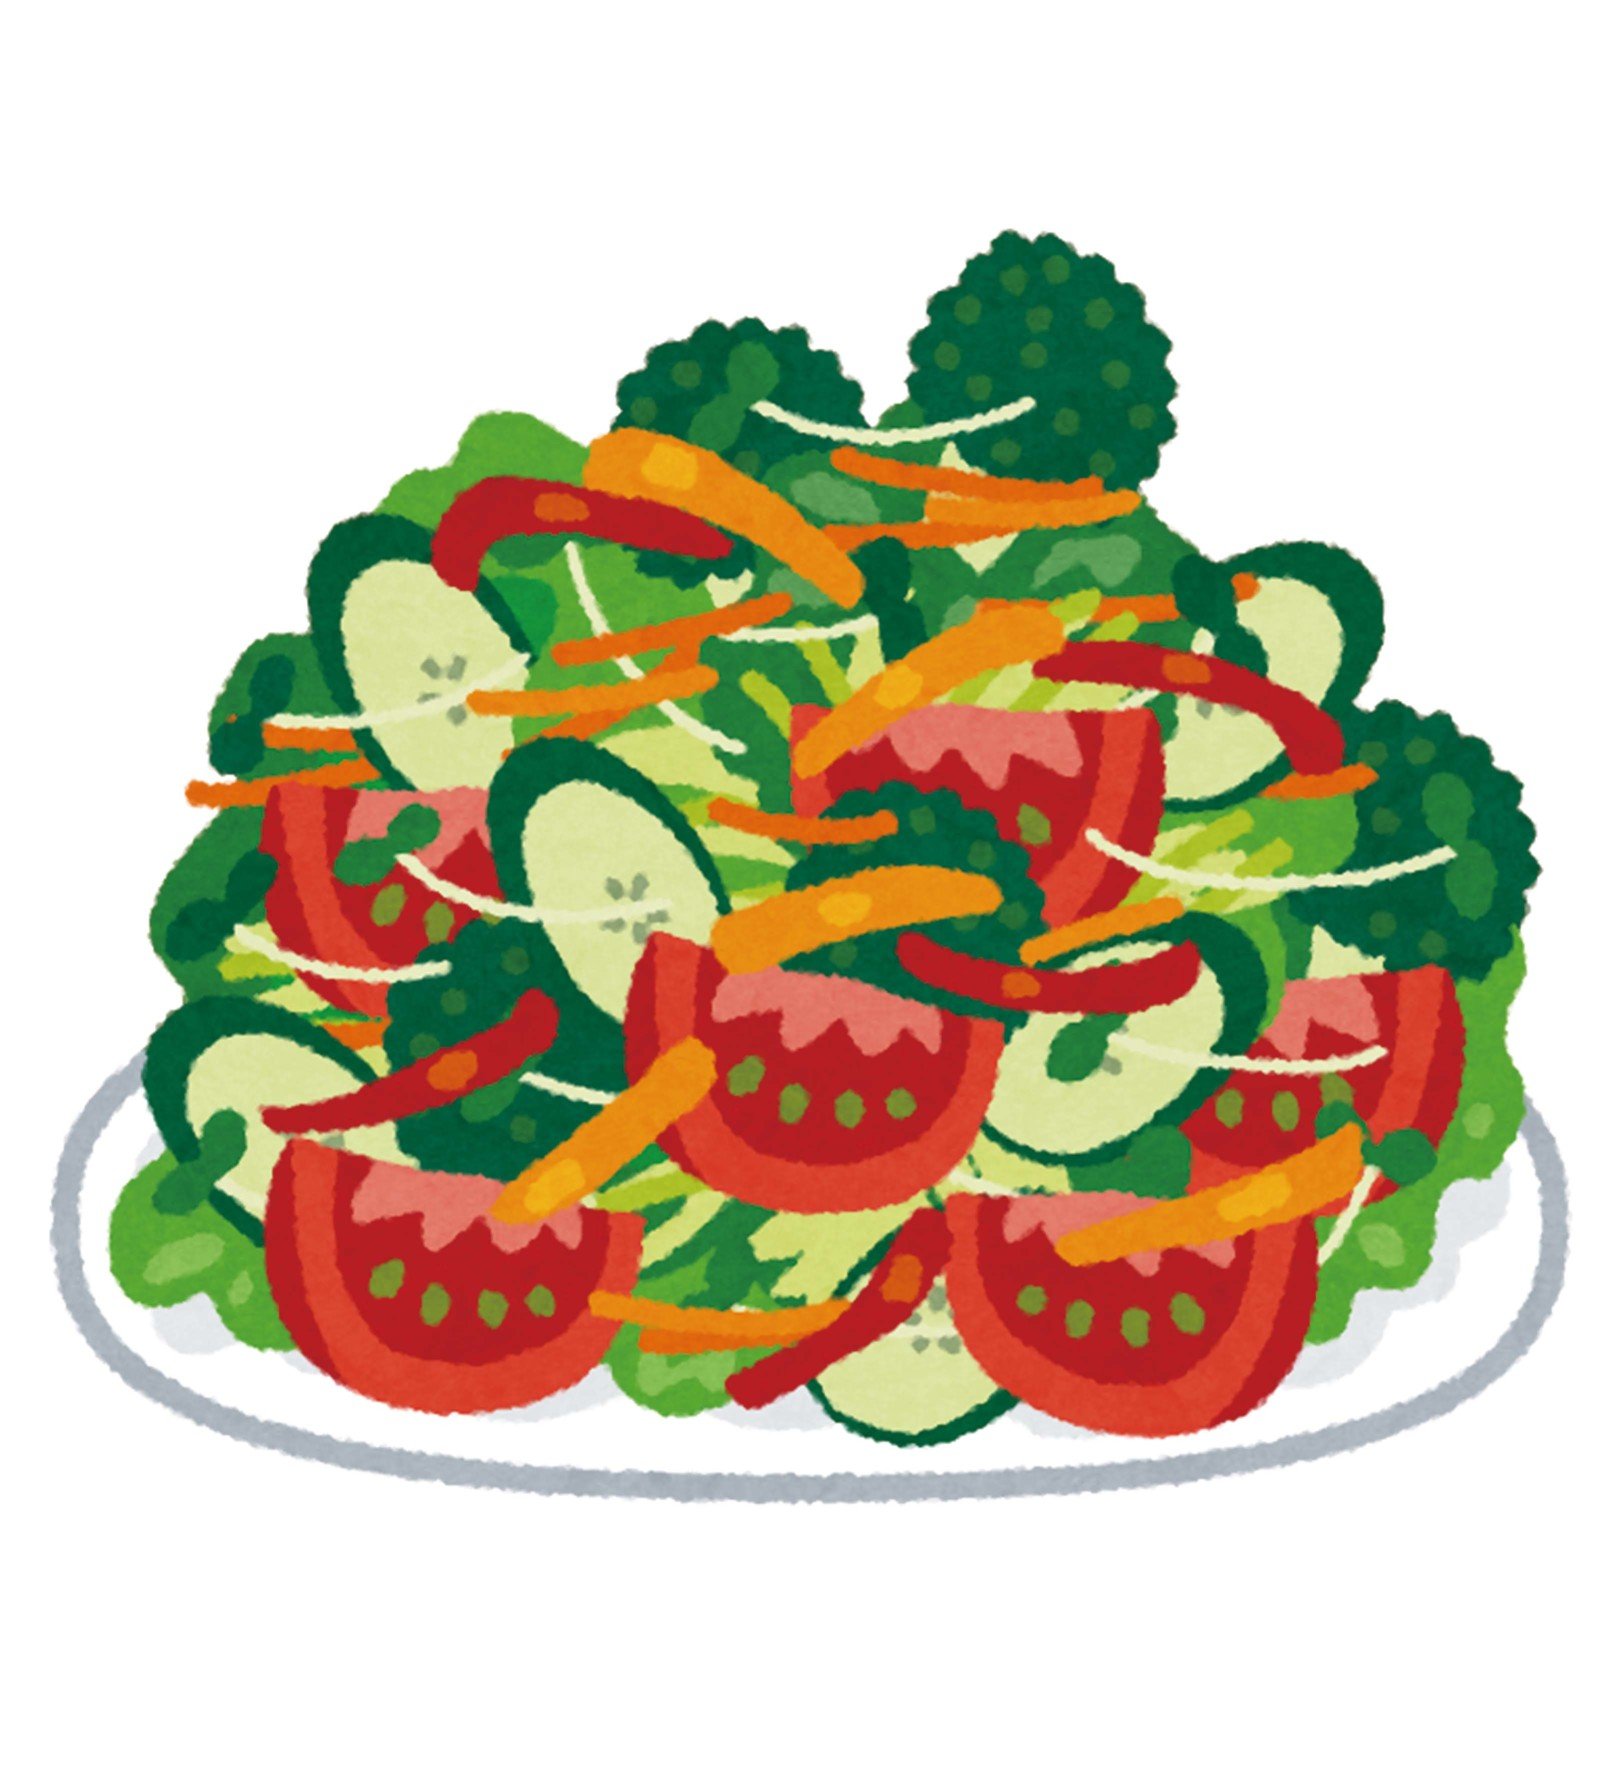 無論東方、西方的家庭中，花椰菜或者青花菜都很經常出現在餐桌上，是一種幾乎人見人愛，非常受歡迎的蔬菜。一般我們說的花椰菜其實所指的是白色的那種，而綠色的則稱為「青花菜」。它也被稱作是最健康、最營養的蔬菜之一，其中具有多項抗氧化的物質，包括「類胡蘿蔔素」、「葉黃素」、「葡萄硫素」、「葉酸」等等。除此之外，人體所需的「鉀」與其他多項維生素也都可以從花椰菜獲取，再加上它低熱量的特性，使花椰菜成為新一代的減肥好物。